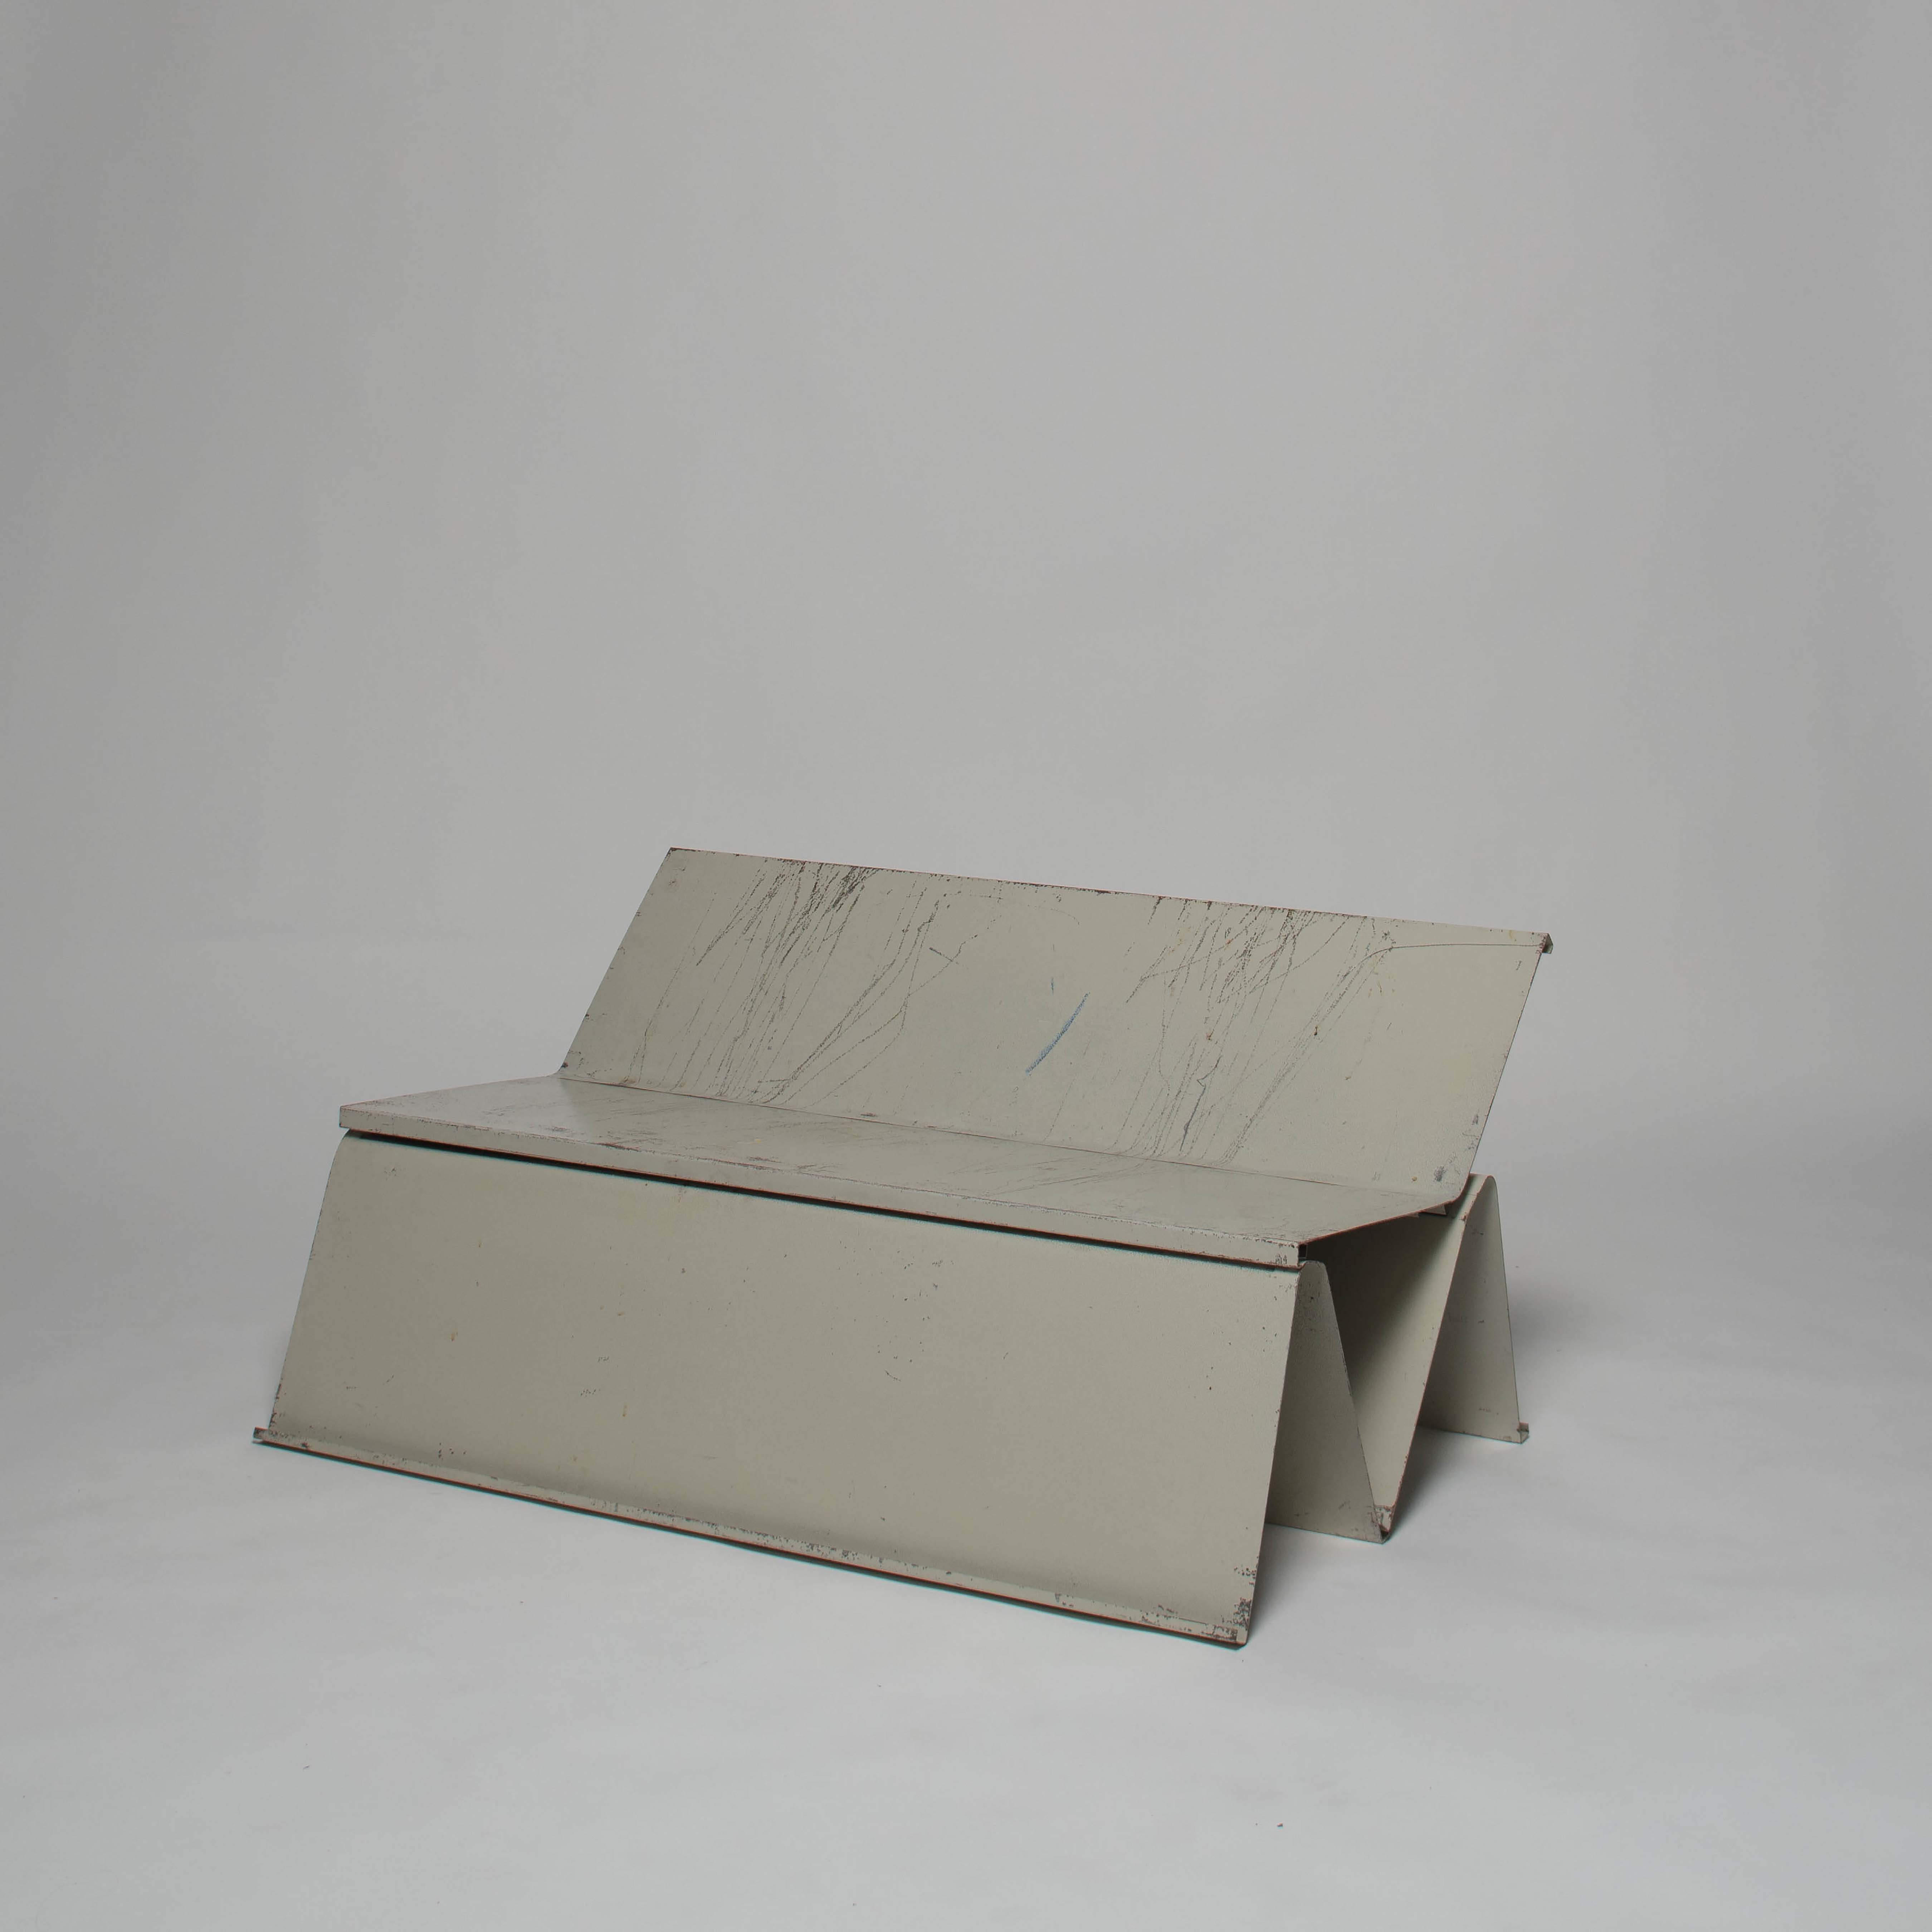 <BODY>Anton Defant und Benjamin Nagy, <em>Fold Bench</em>, 2021<br />© Werkstätte für digitale Fotografie, Universität für angewandte Kunst Wien<br /><br /></BODY>